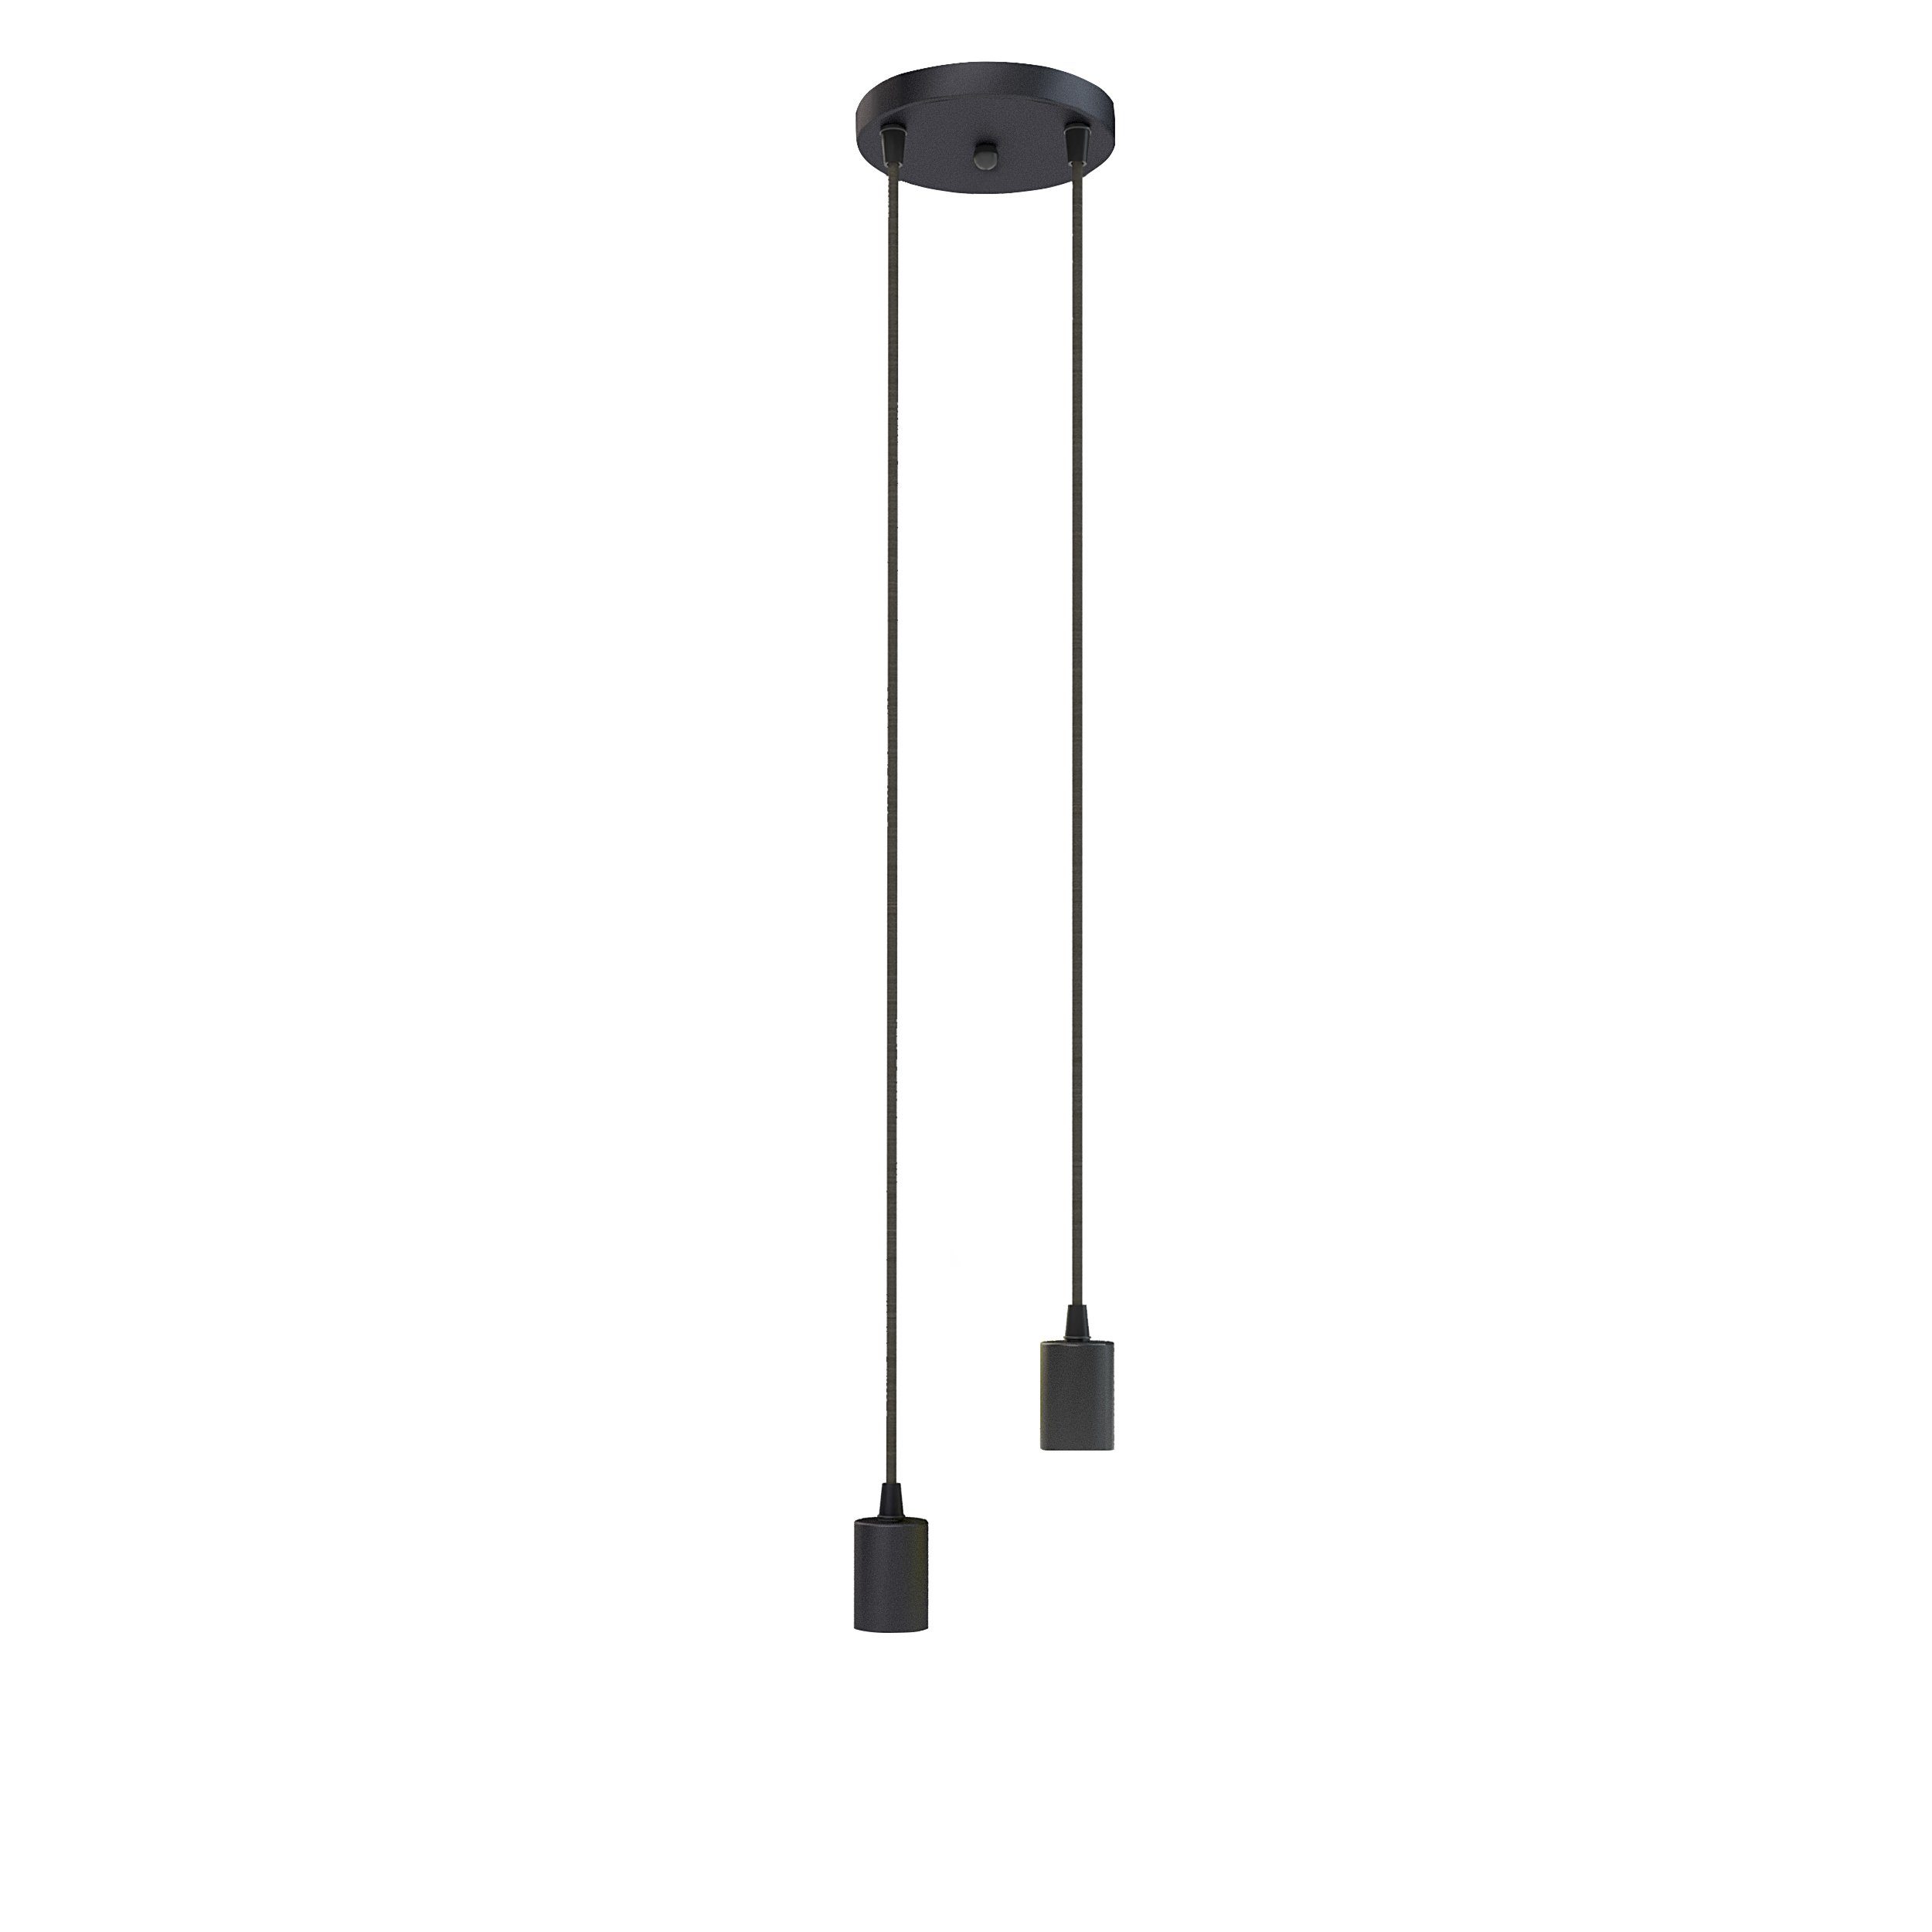 SSC-LUXon LED-Hängeleuchte PARU Pendelleuchte Fassung 2-flammig Textilkabel schwarz E27